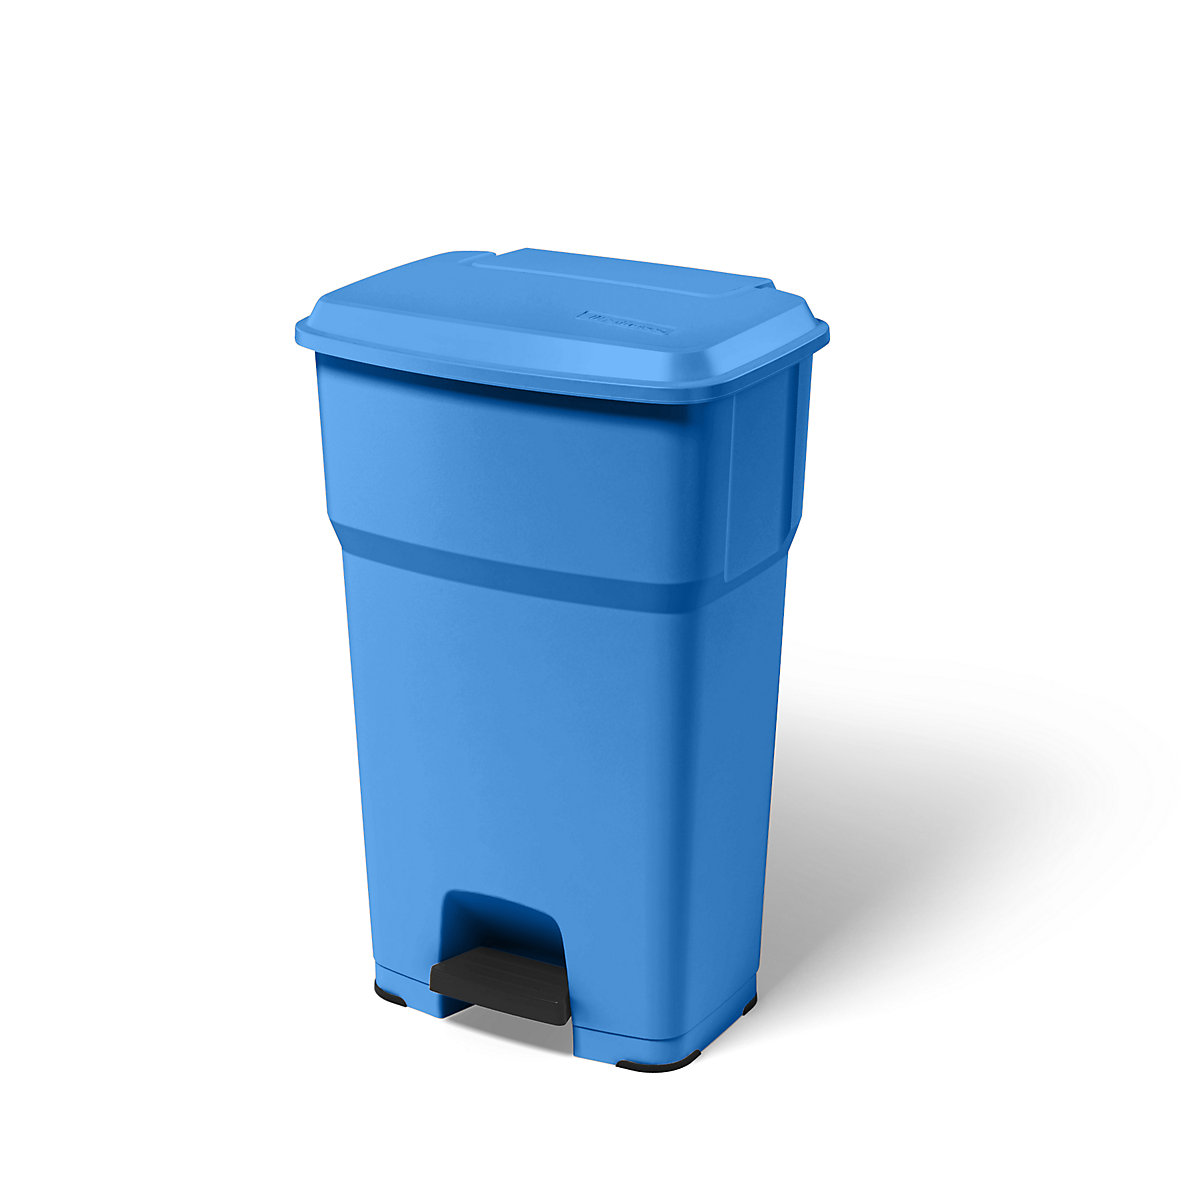 rothopro – Collecteur de déchets à pédale HERA, capacité 85 l, l x h x p 490 x 790 x 390 mm, bleu